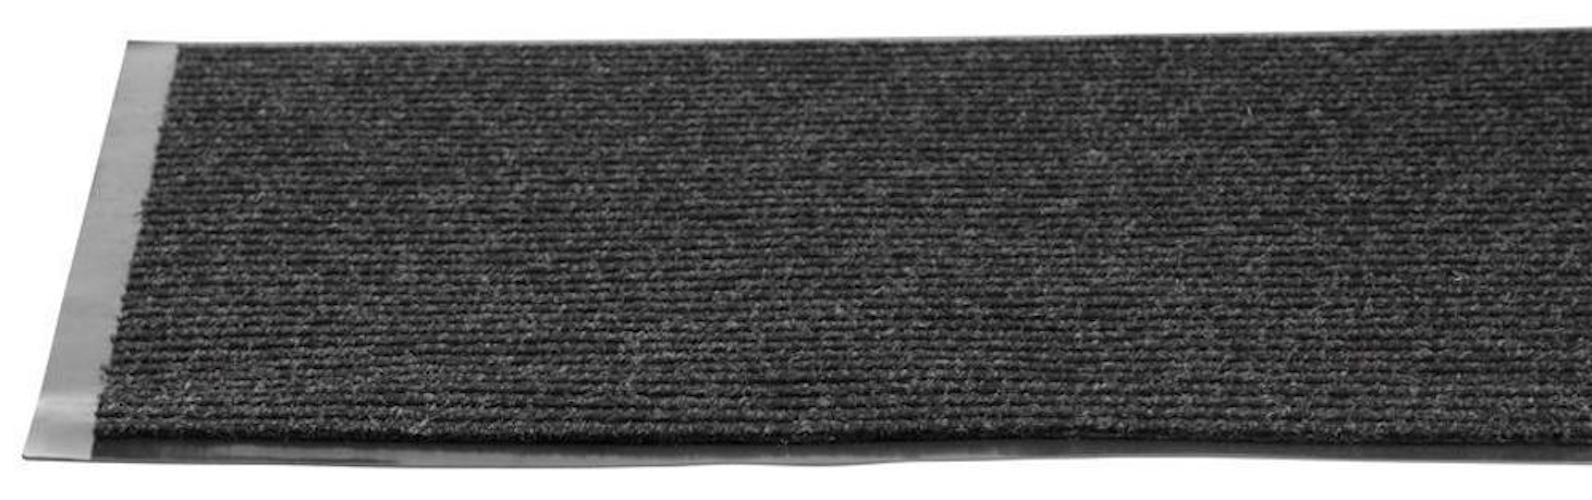 PROREGAL Fußmatte, Schmutzfangmatte 60x90cm, Schwarz-weiß